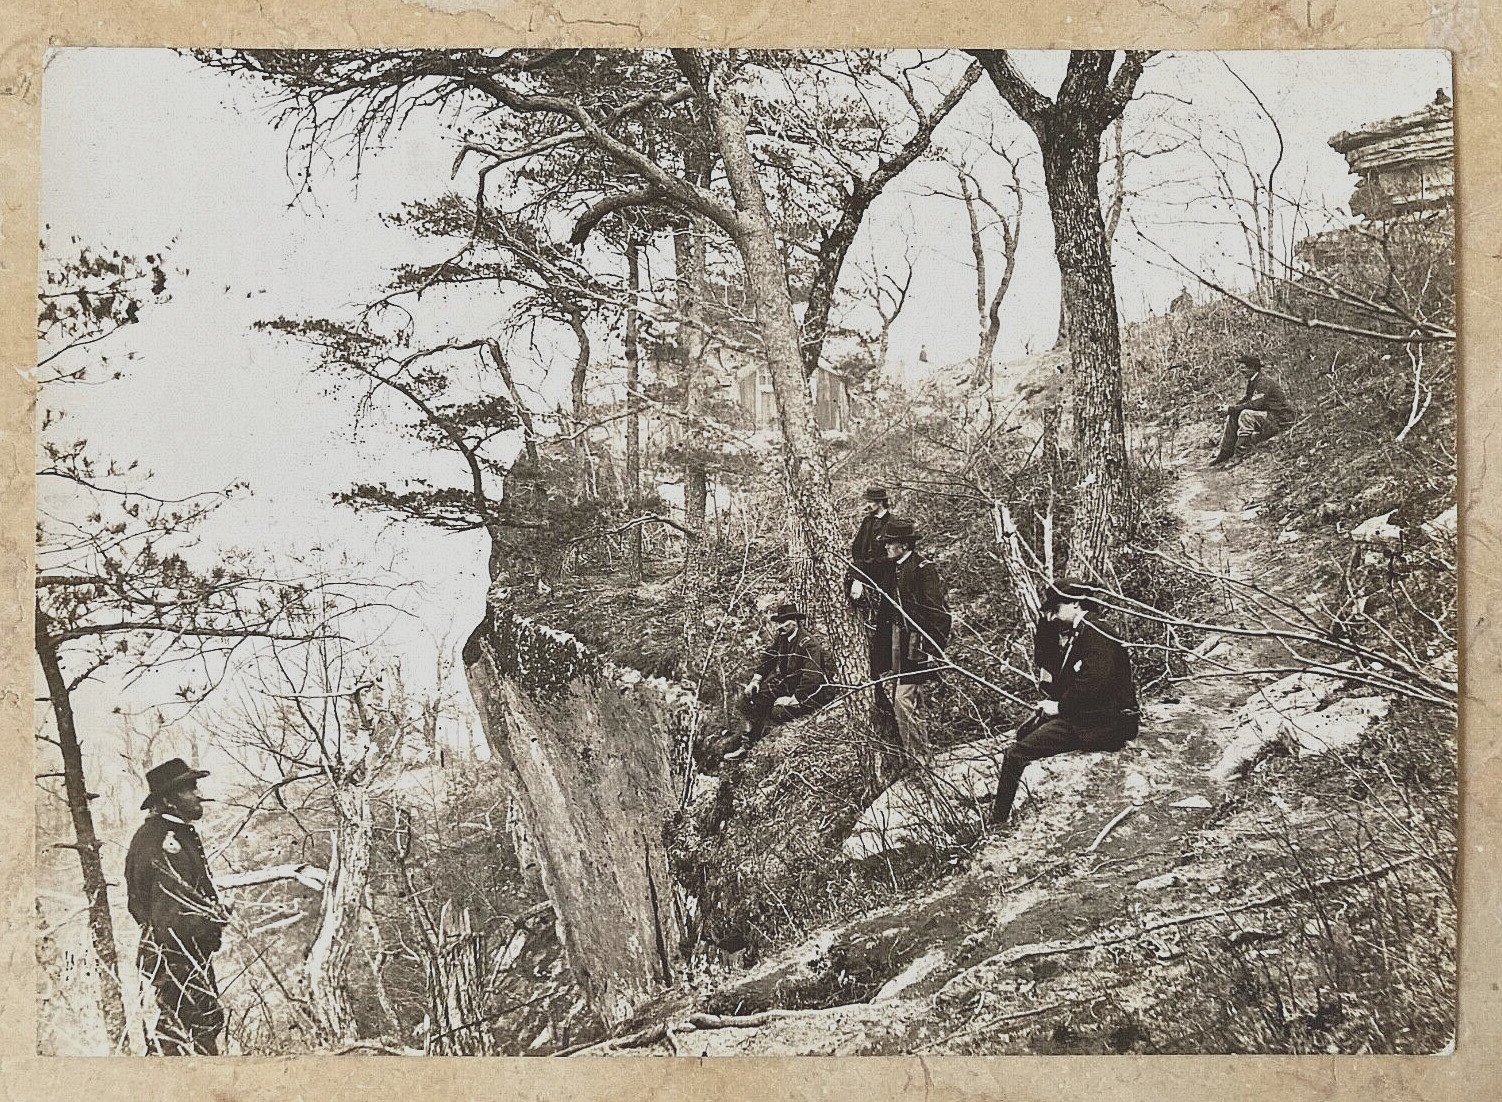 ORIGINAL - CIVIL WAR - GENERAL GRANT AT LOOKOUT MOUNTAIN NOV. 1863 PHOTOGRAPH